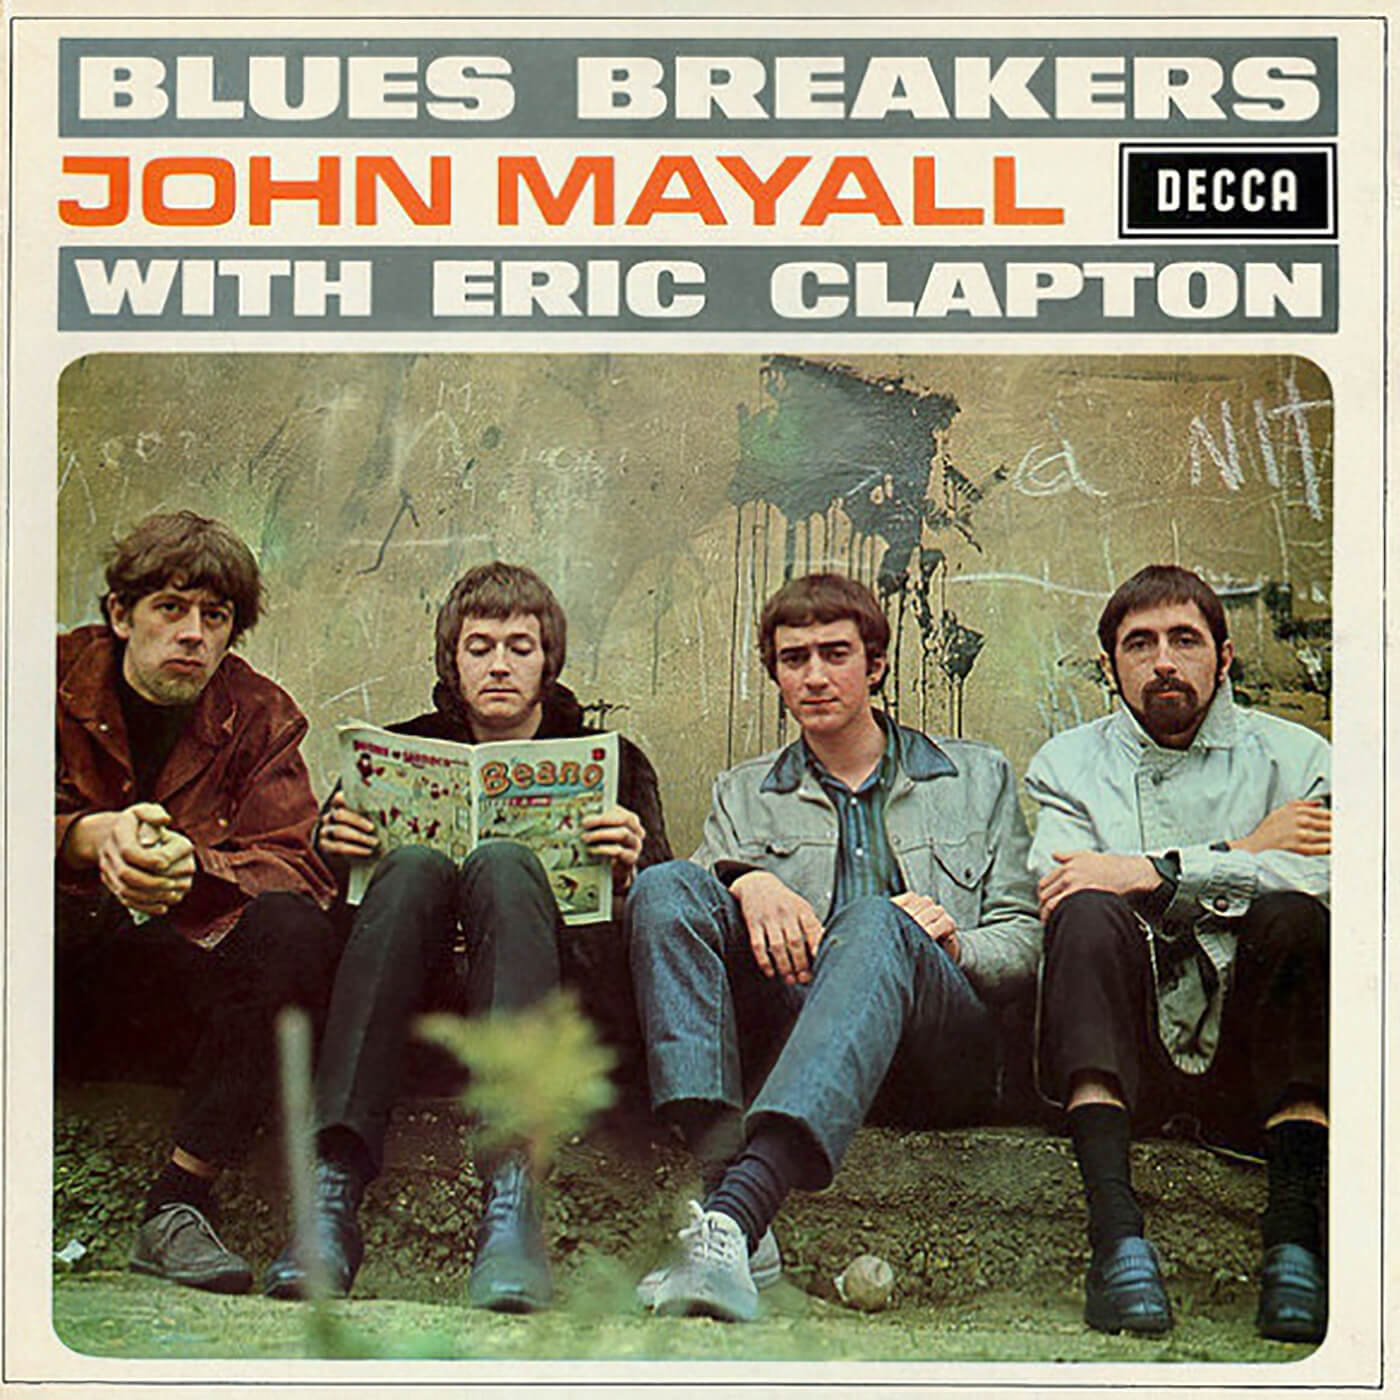 与埃里克·克莱普顿（Eric Clapton）的蓝调破坏者